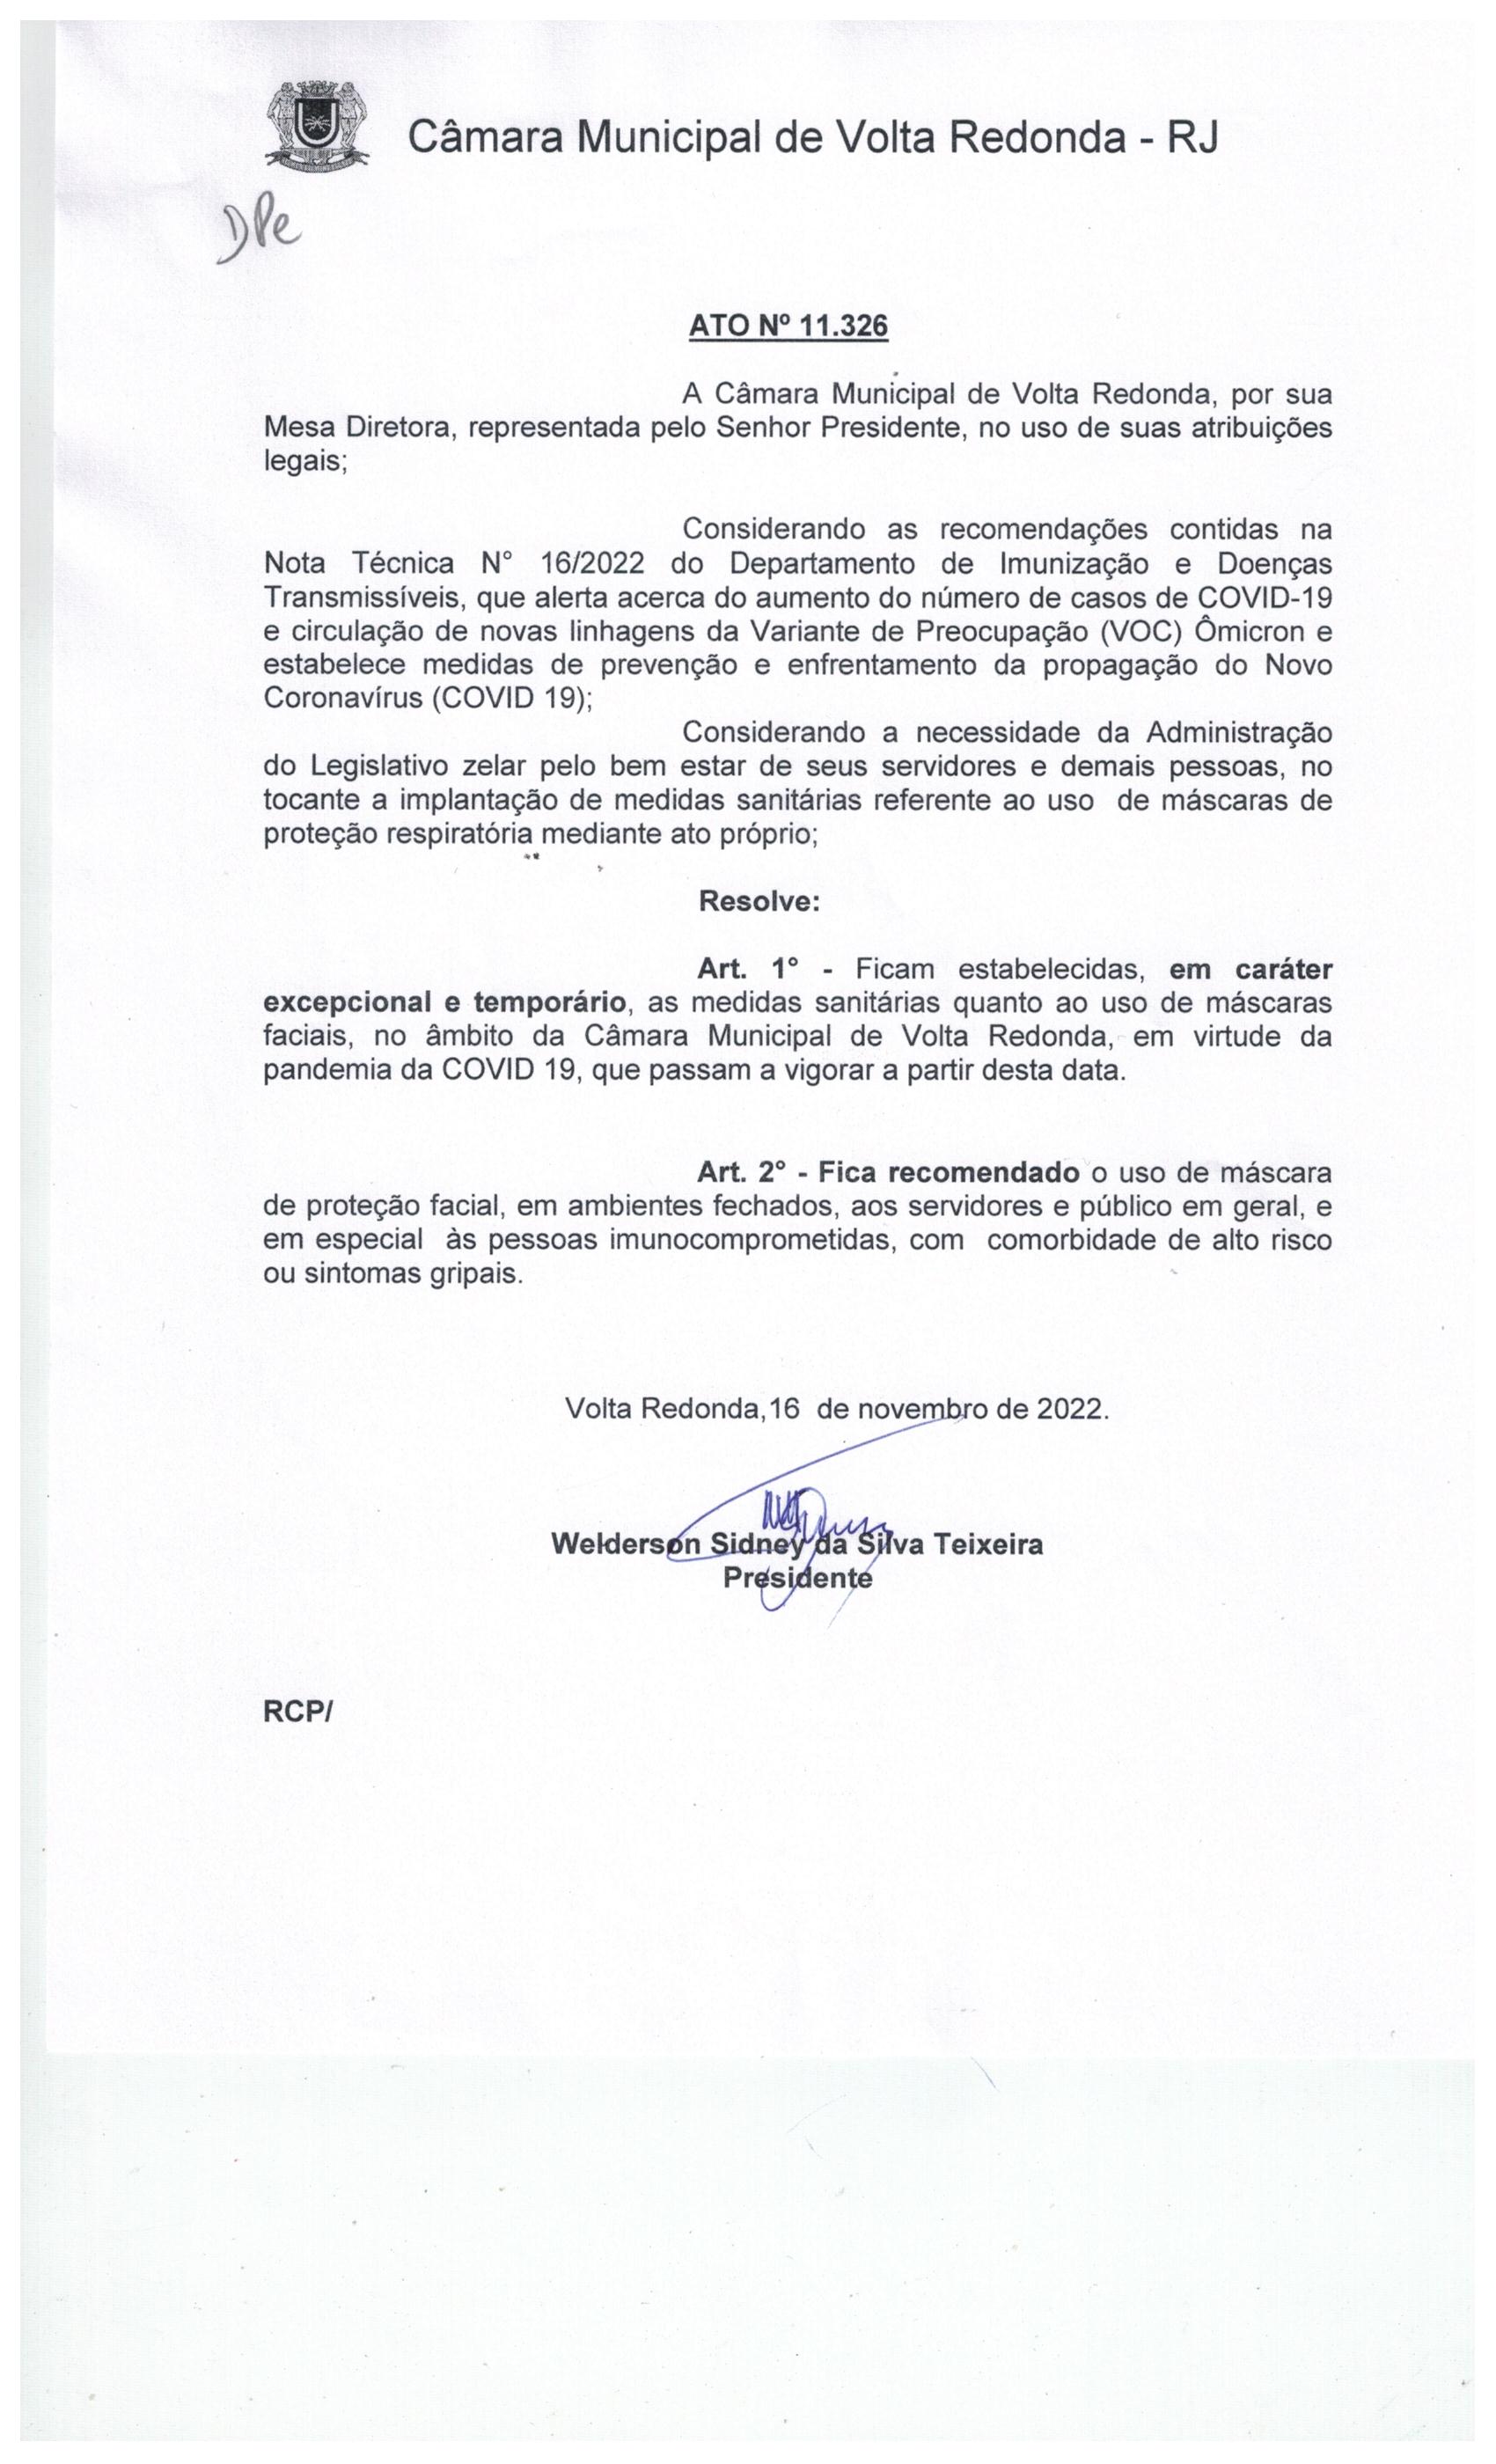 Ato nº 11.326-   Retorno de Uso de máscaras de proteção  faciais na Câmara Municipal de Volta Redonda